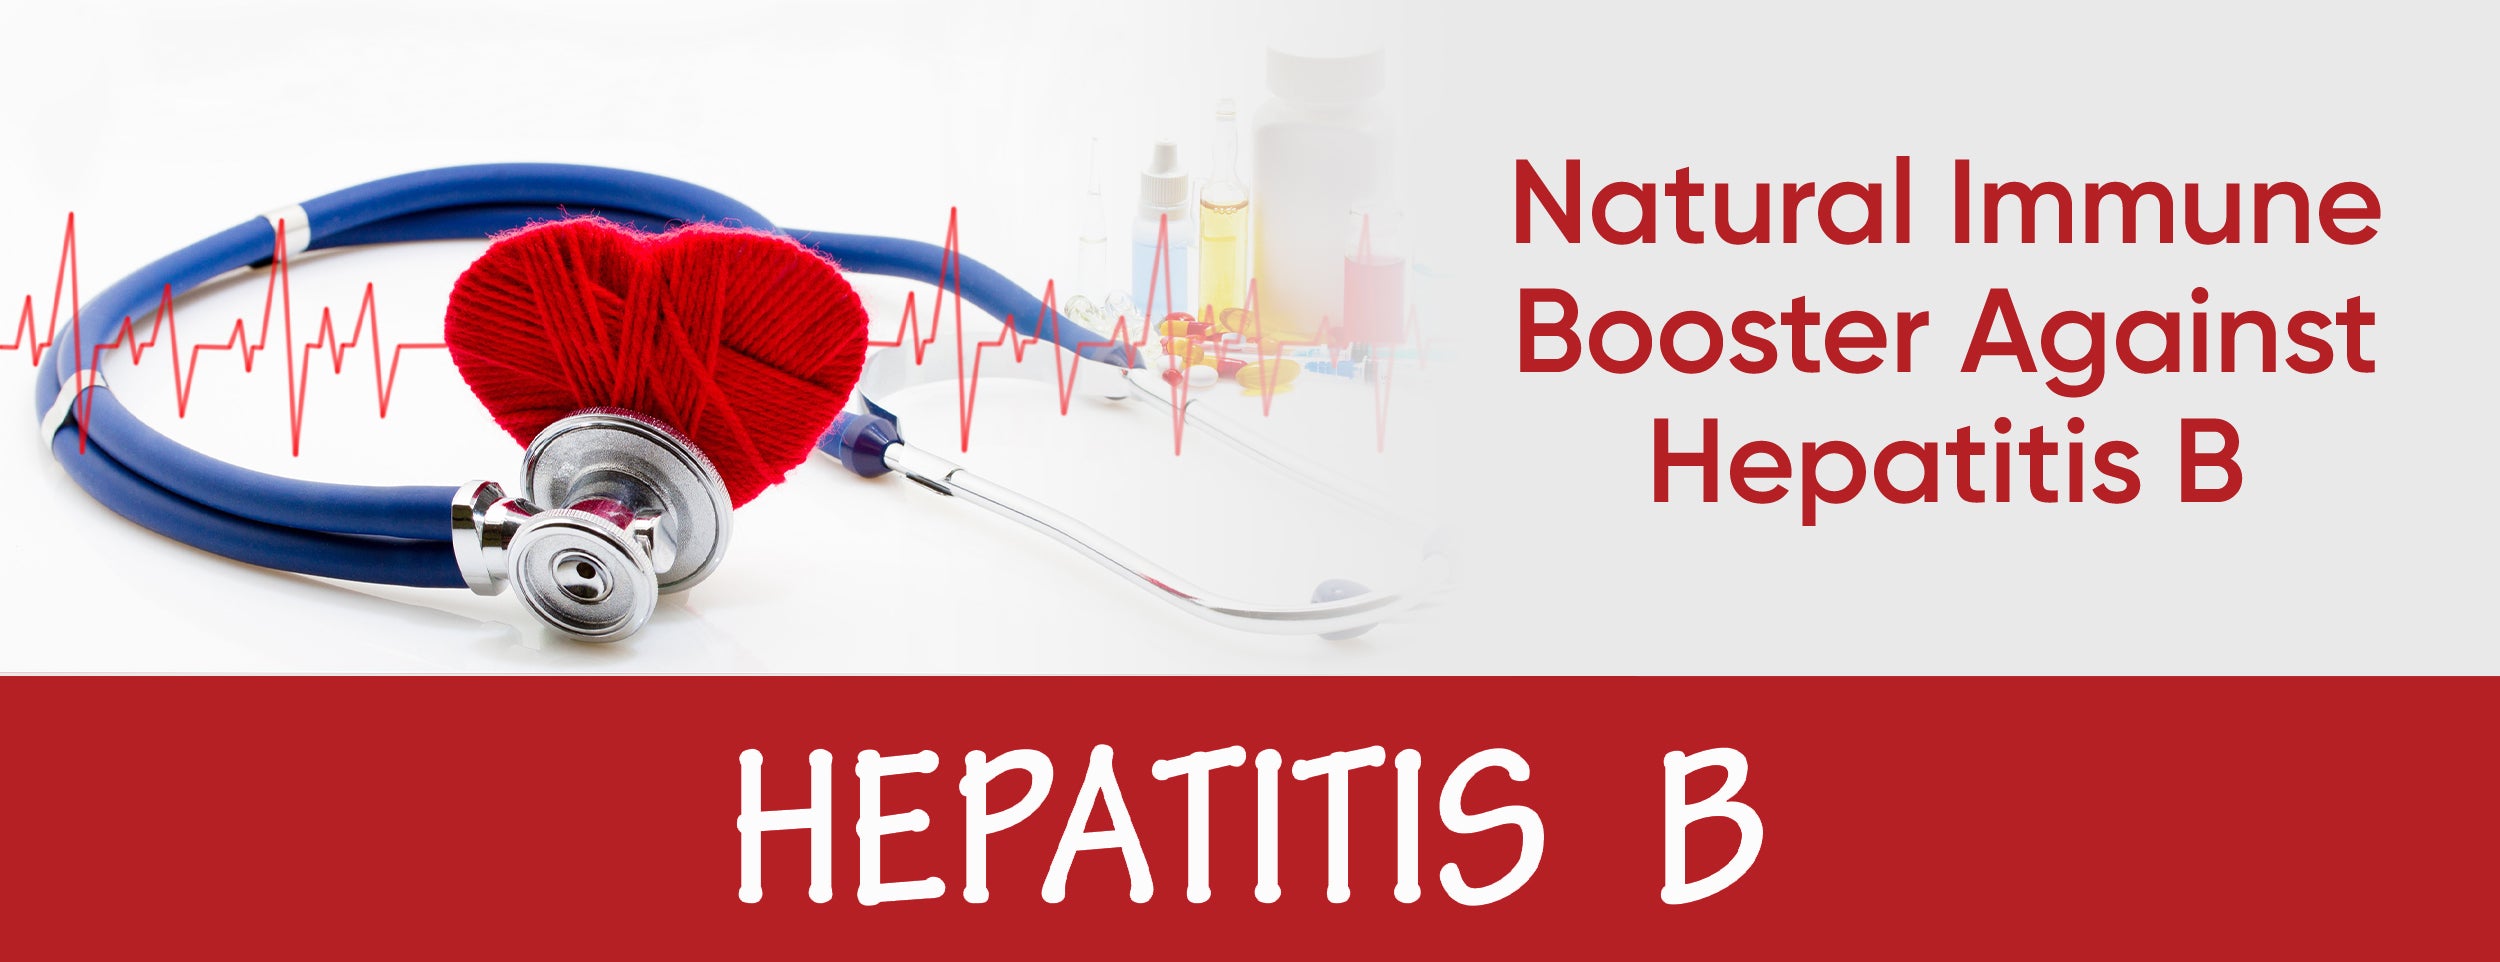 Anti-Hepatitis B Natural Immune Booster